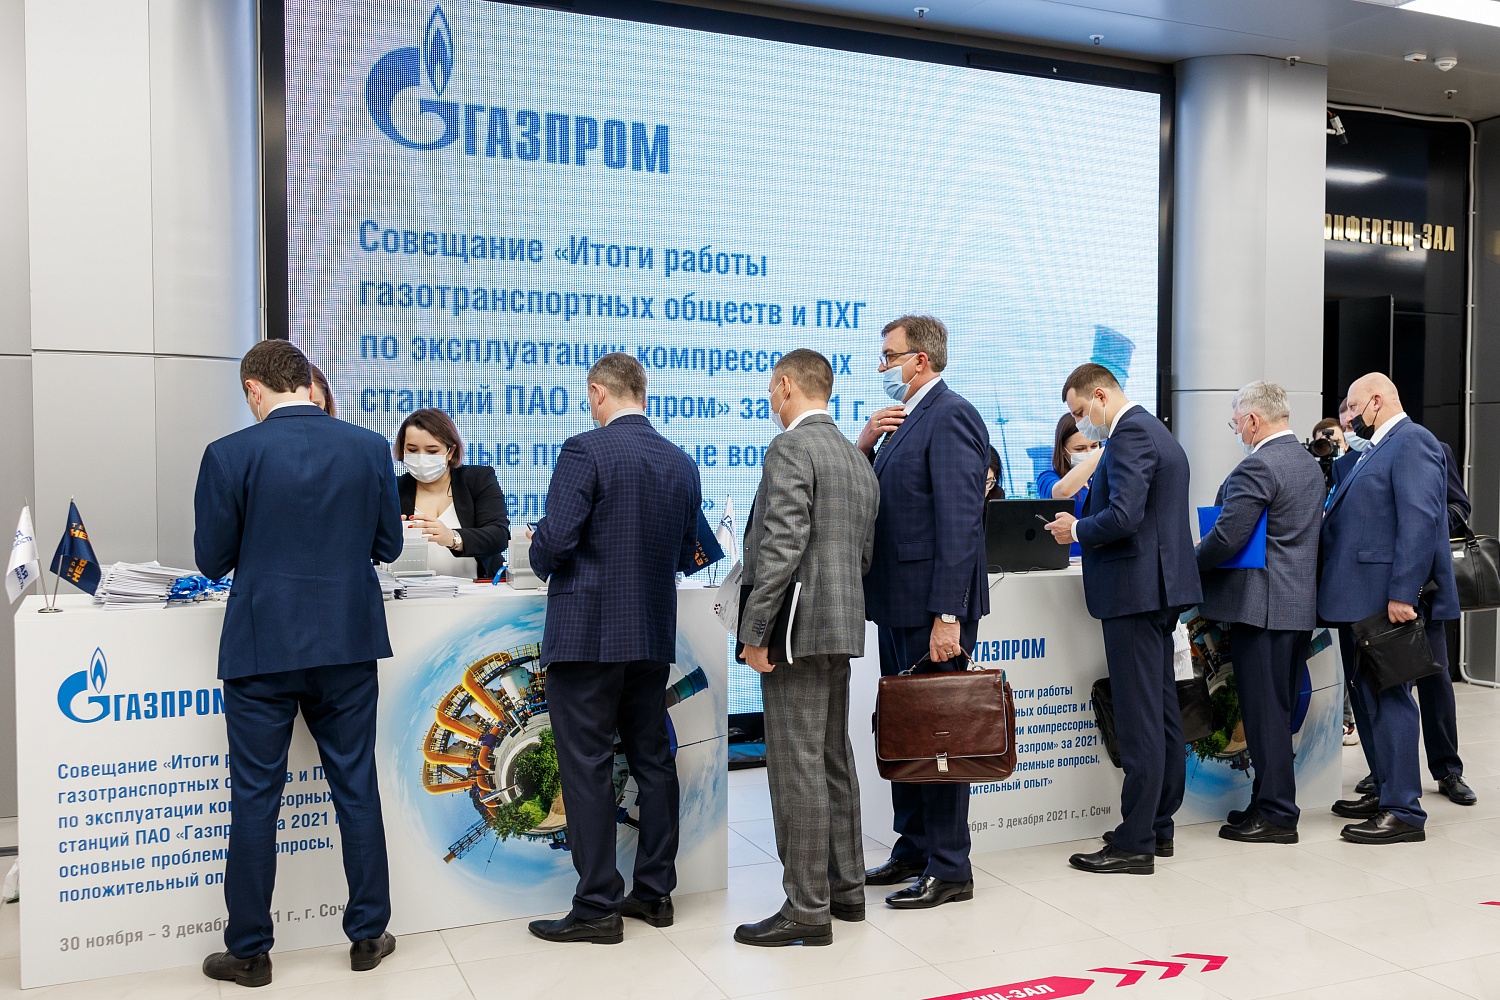 «Итоги работы газотранспортных обществ и ПХГ по эксплуатации компрессорных станций ПАО «Газпром» за 2021 г.